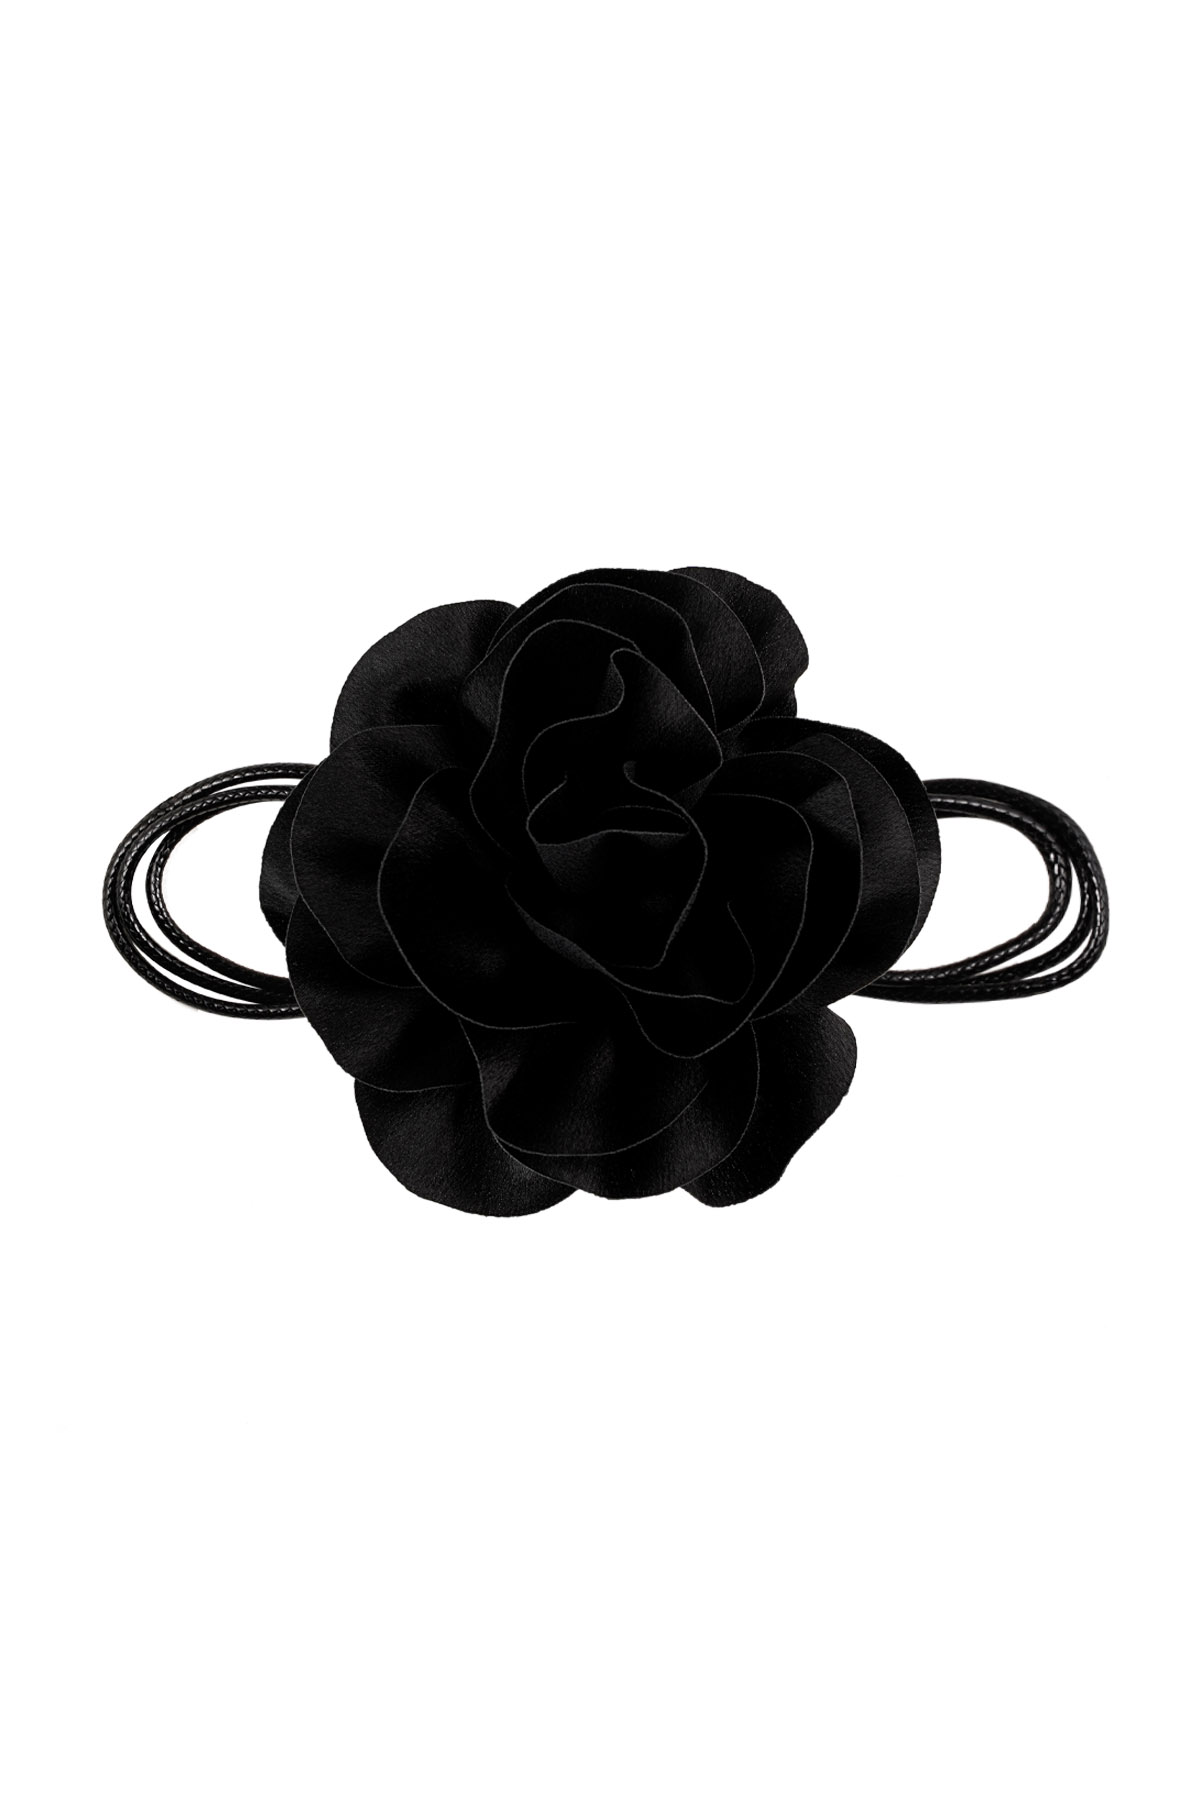 Collana corda fiore lucido - nero h5 